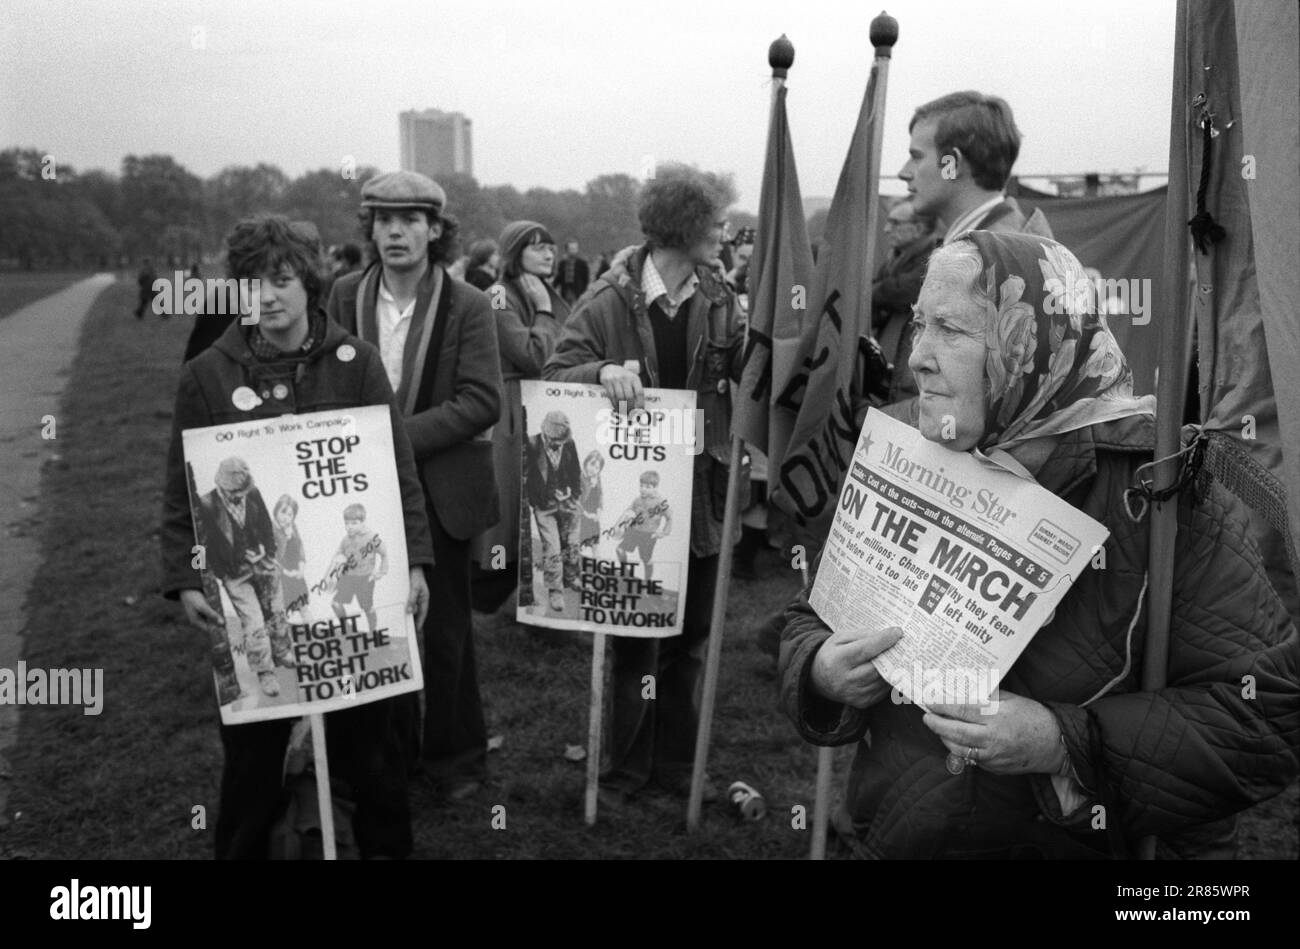 Protesta Londra contro la disoccupazione e i tagli ai servizi pubblici negli anni '1970 del Regno Unito. Ferma i tagli, combatti per il diritto al lavoro, raduno e marcia a Hyde Park. Una donna che vende copie della Morning Star. Londra, Inghilterra 1976 HOMER SYKES Foto Stock